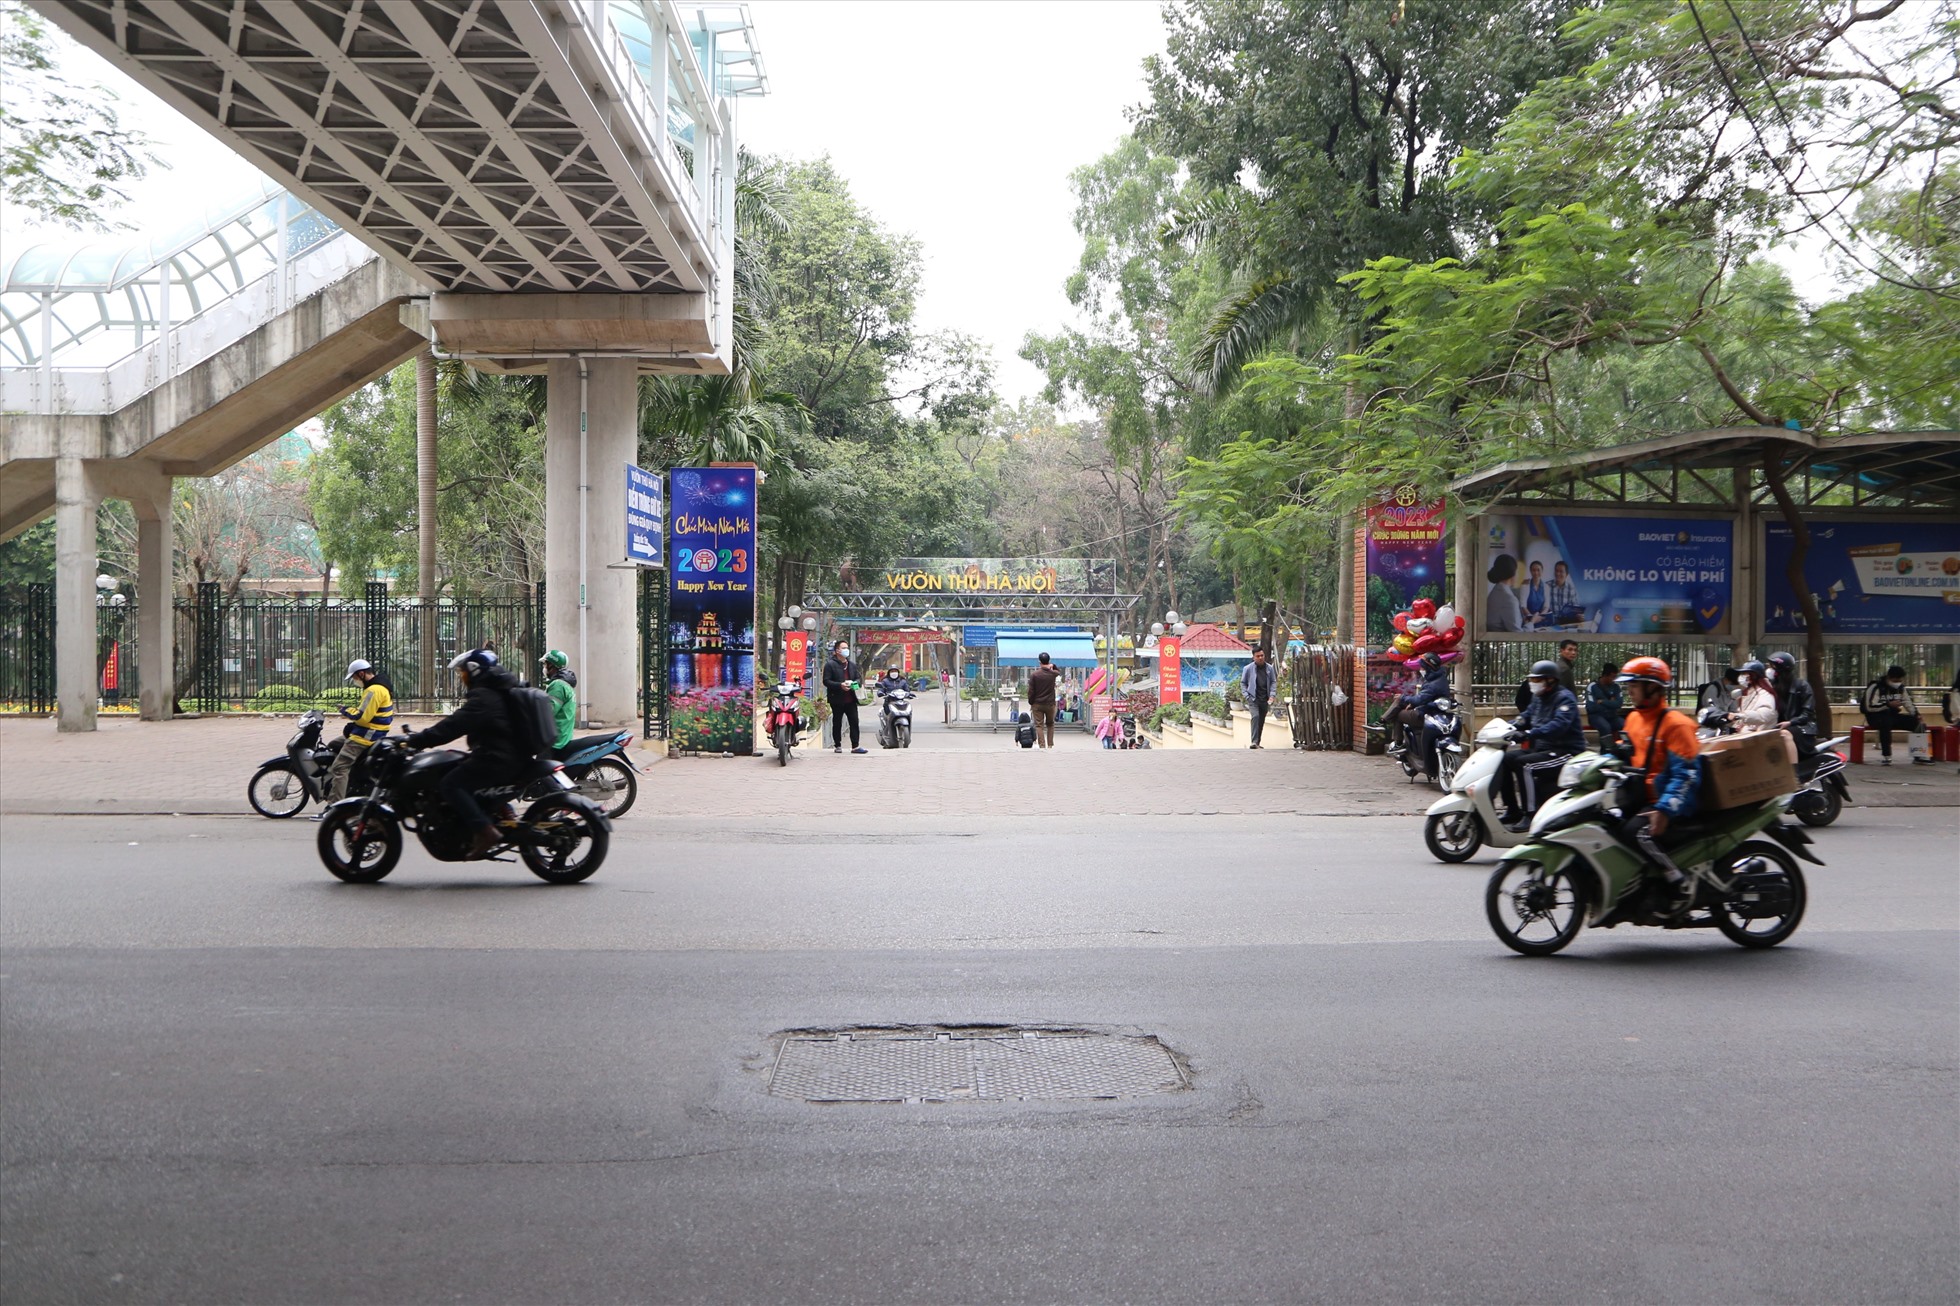 Khu vực được nghiên cứu đang là điểm chờ xe buýt và là lối lên xuống của ga Cầu Giấy (thuộc Dự án tuyến đường sắt đô thị Nhổn - ga Hà Nội). Ảnh: Vĩnh Hoàng